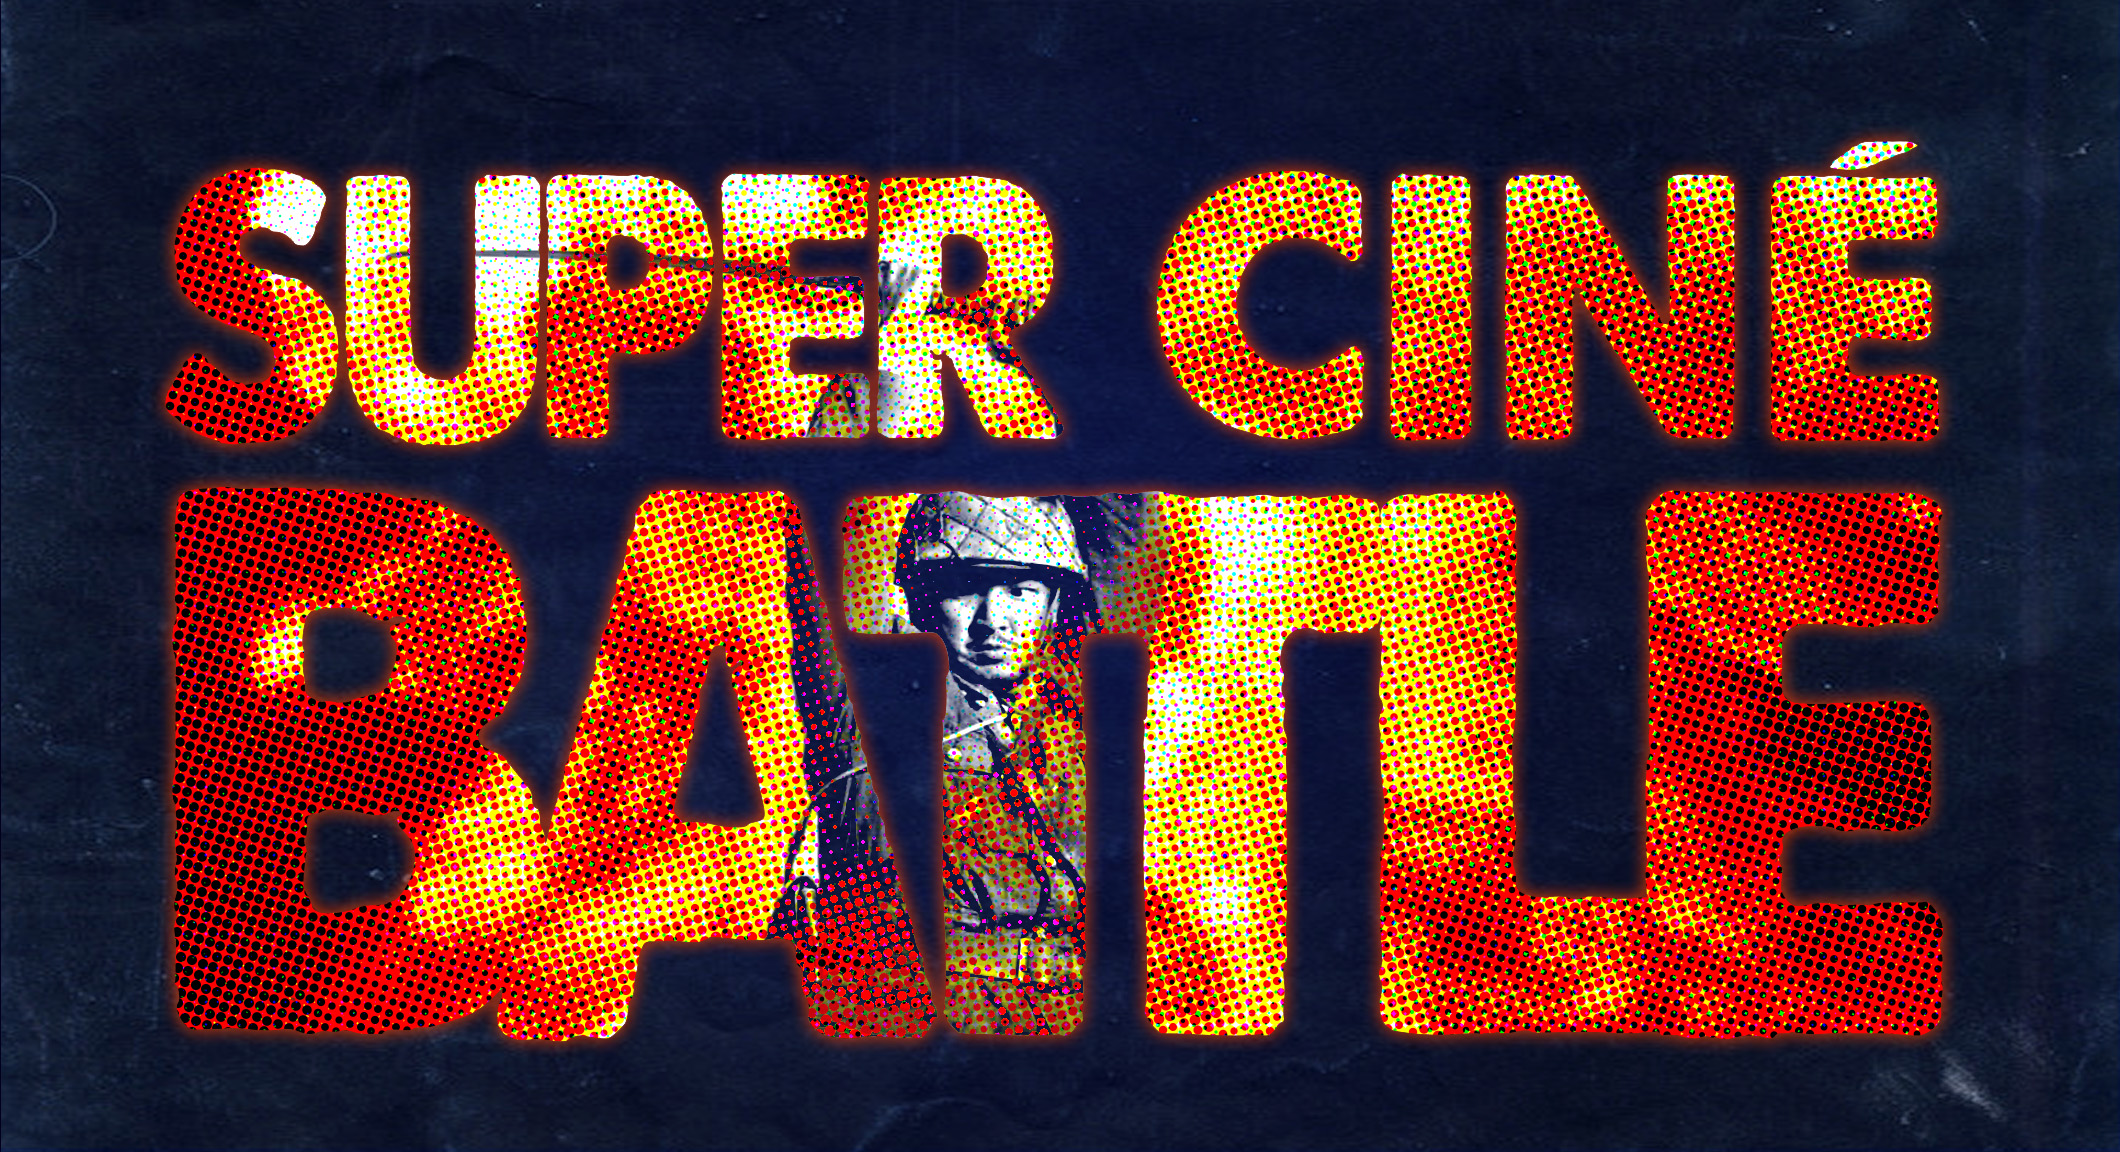 Super Ciné Battle 183 : tombés au champ d’honneur